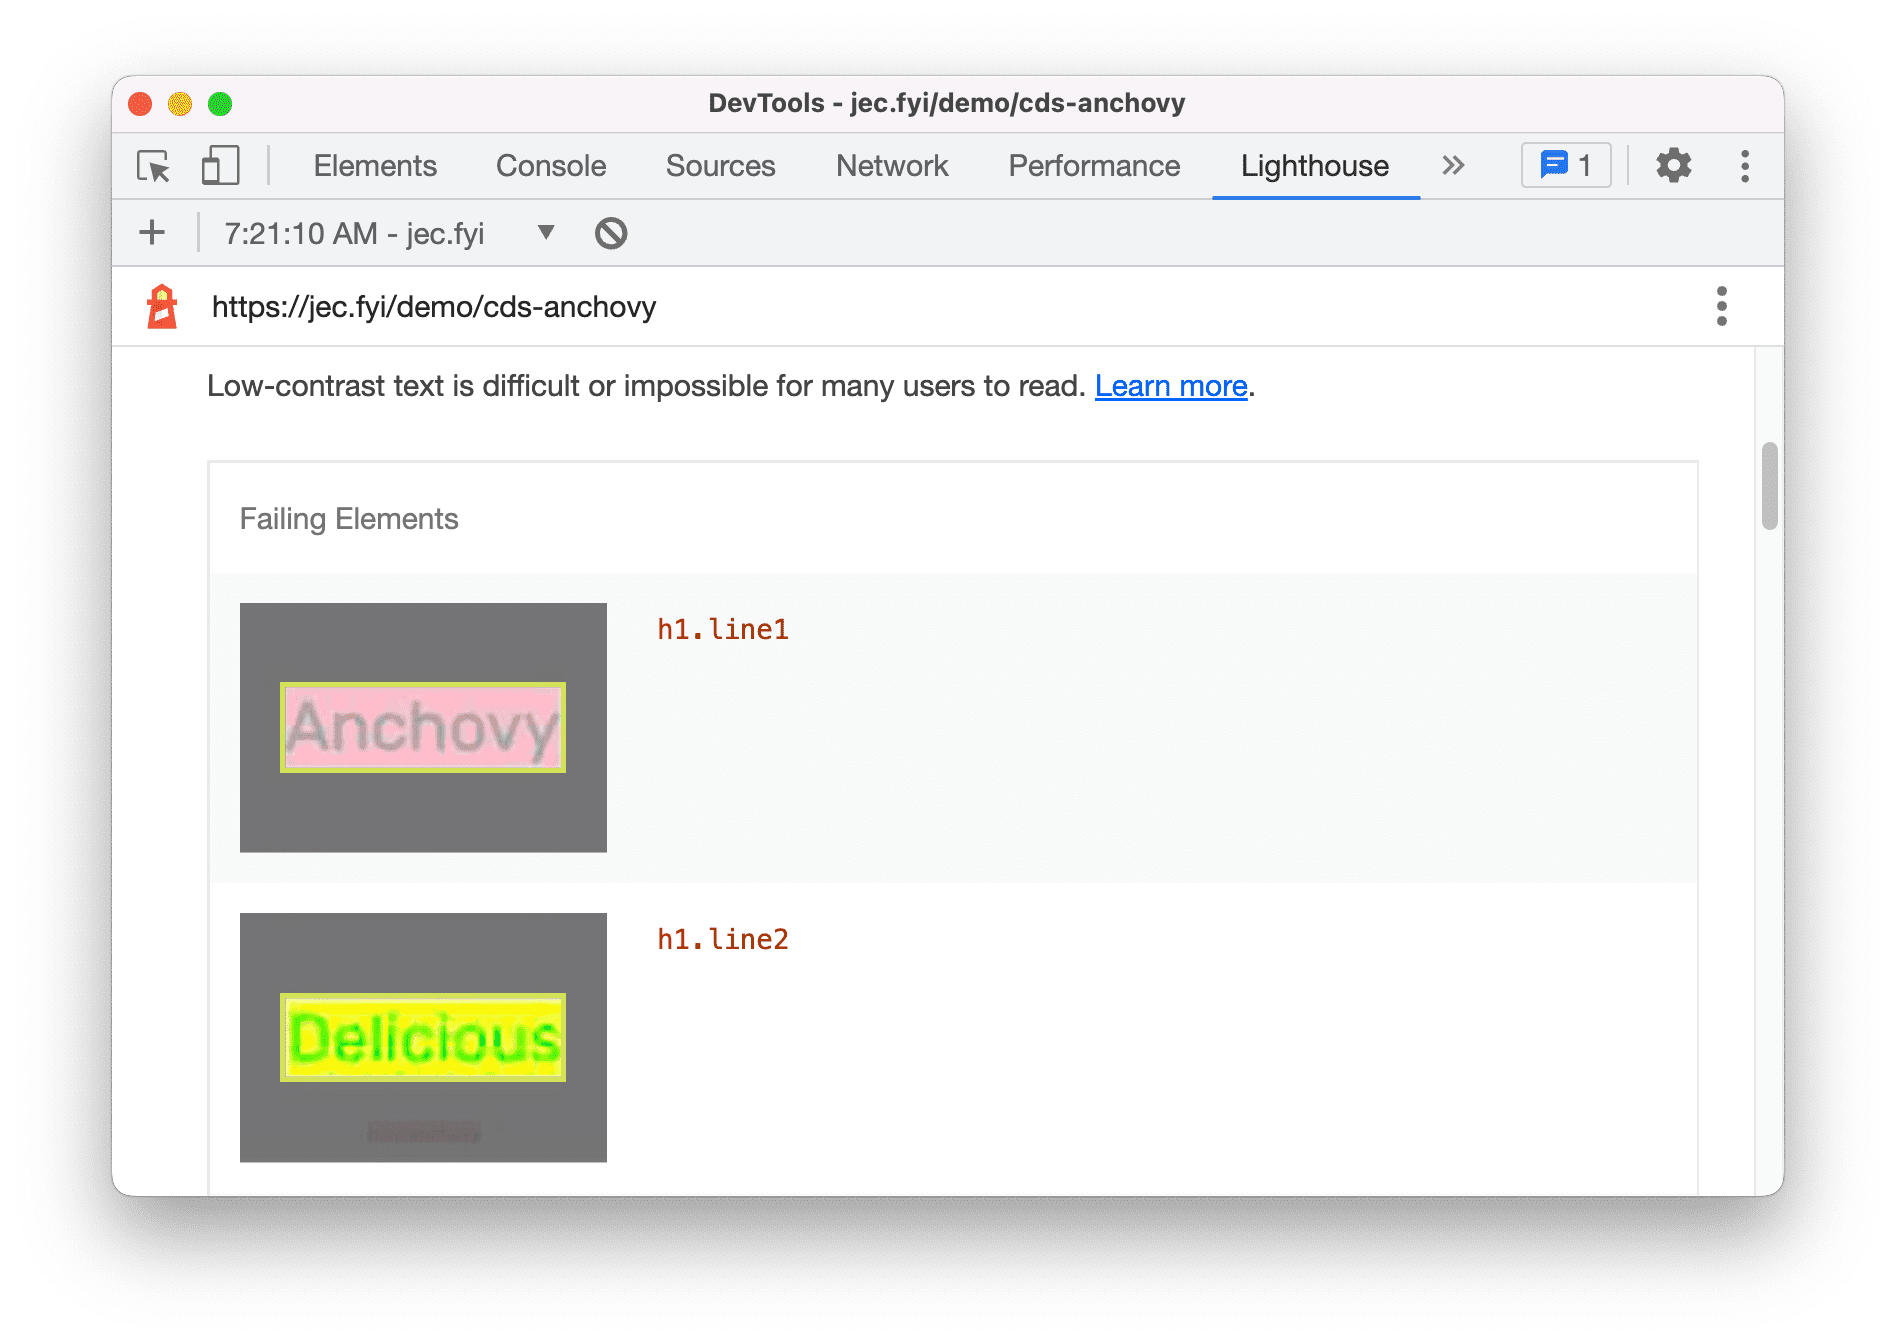 لقطة شاشة لتقييم Lighthouse تعرض نتائج لنص منخفض التباين لمجموعات الألوان المكوّنة من كلمتَين